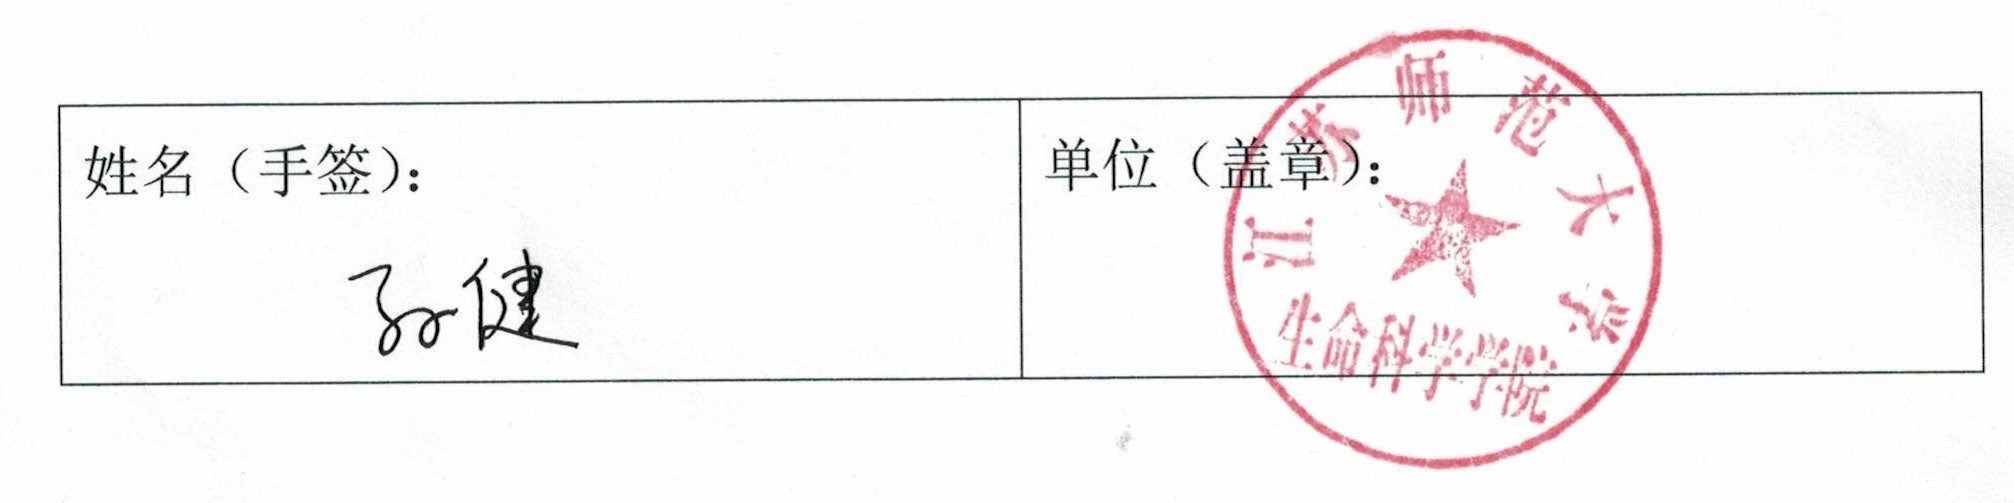 科技部评审意见-江苏师大孙健-签字.jpg